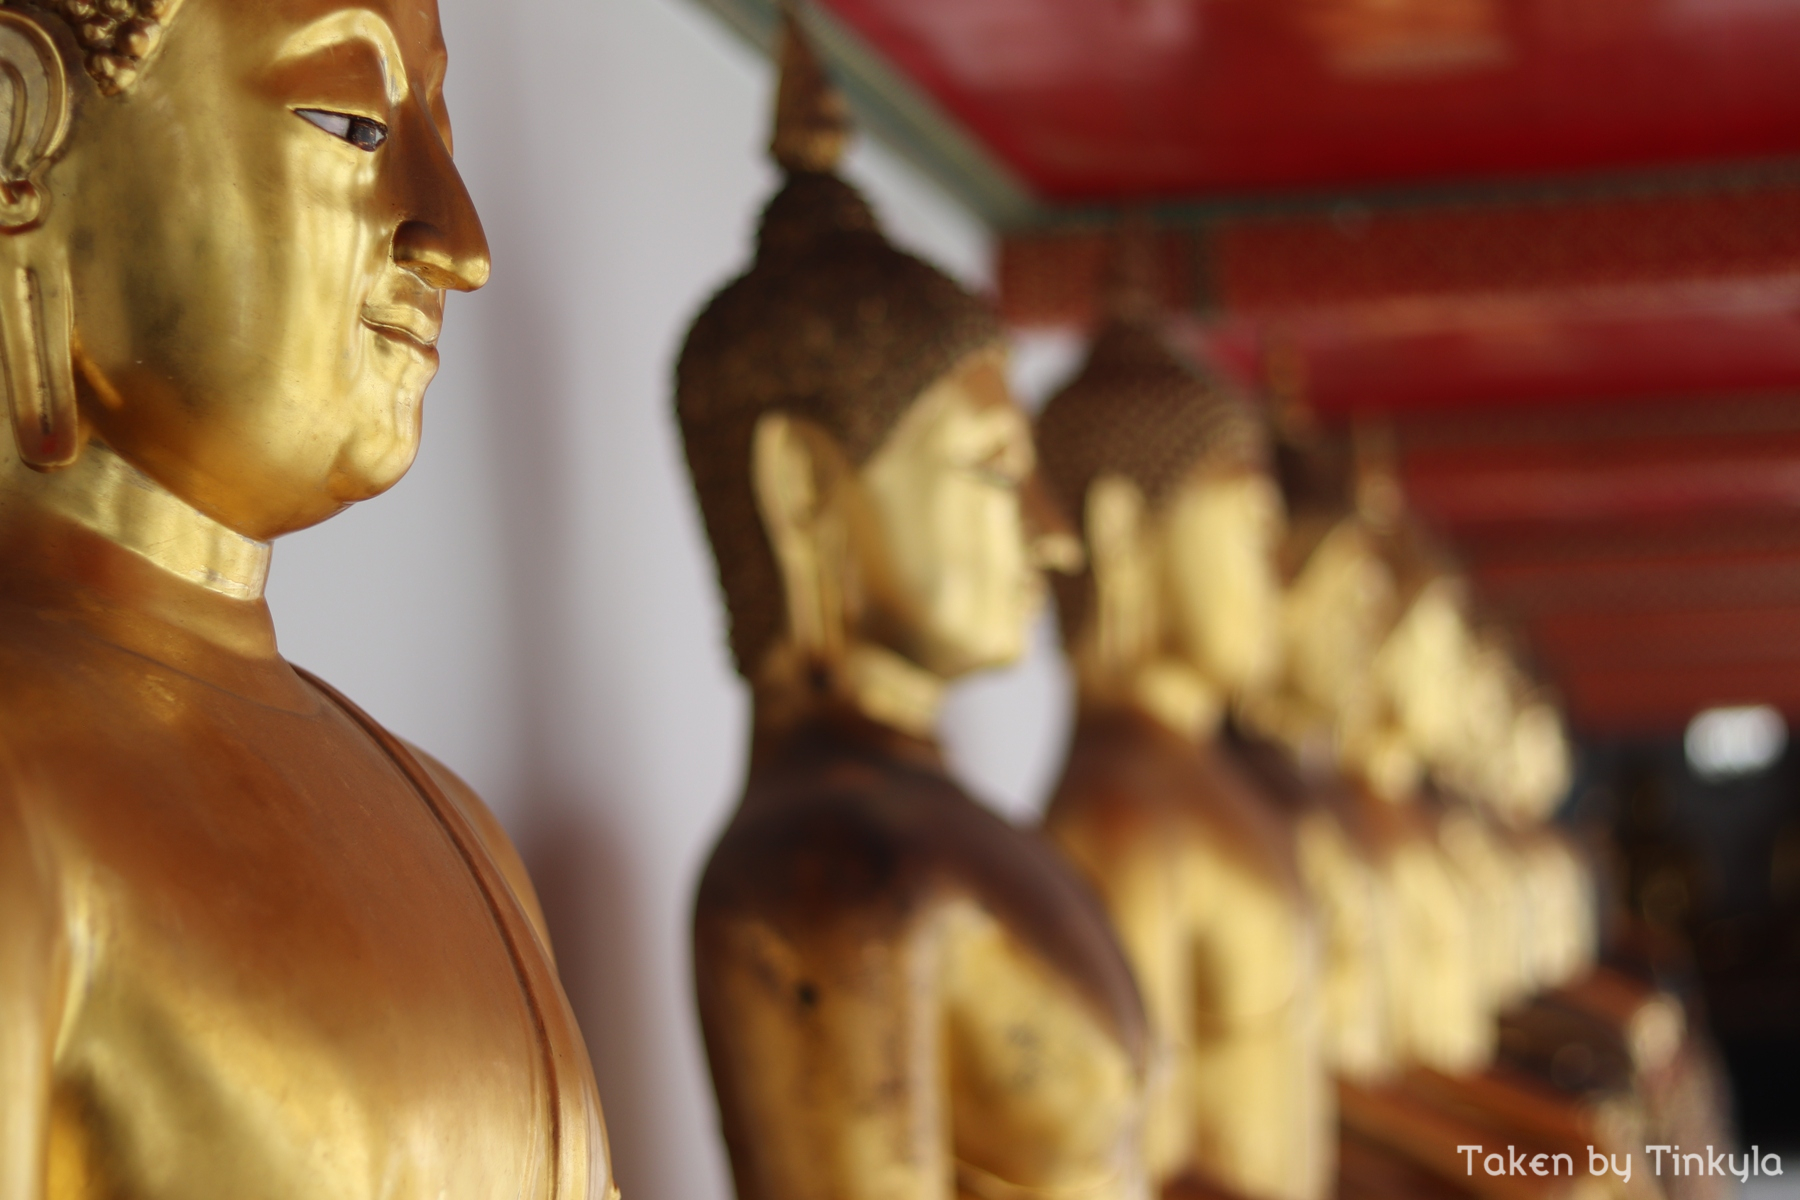 Buddhas in Wat Pho